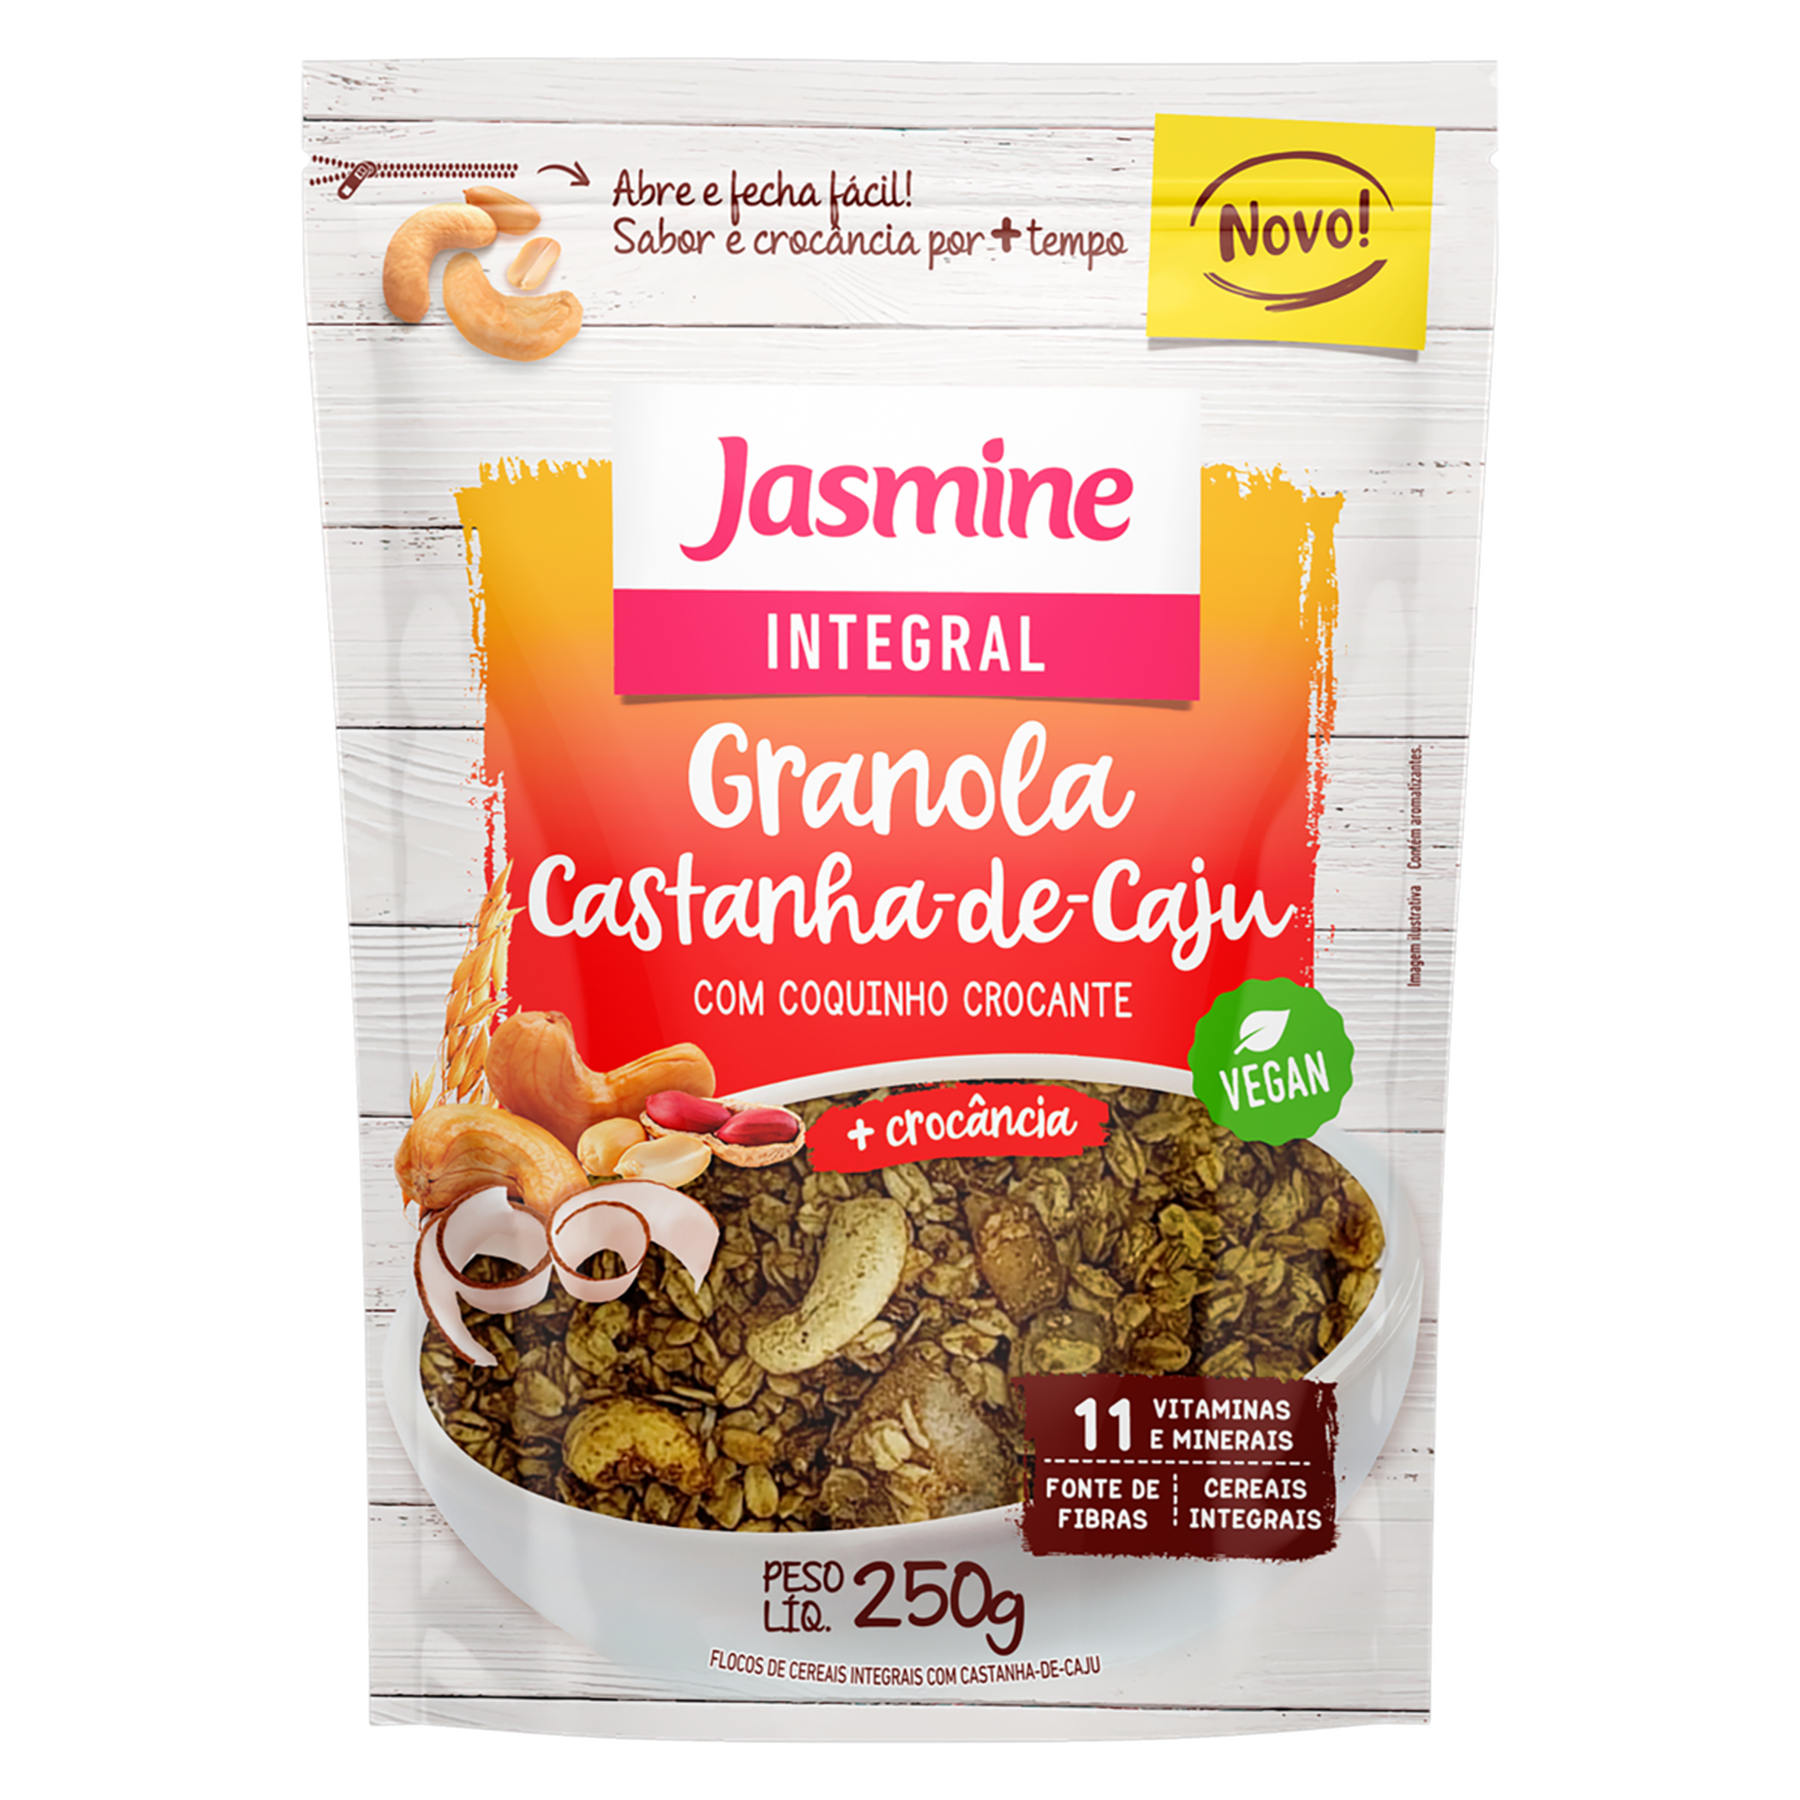 Granola Castanha-de-Caju Integral Jasmine Pouch 250g